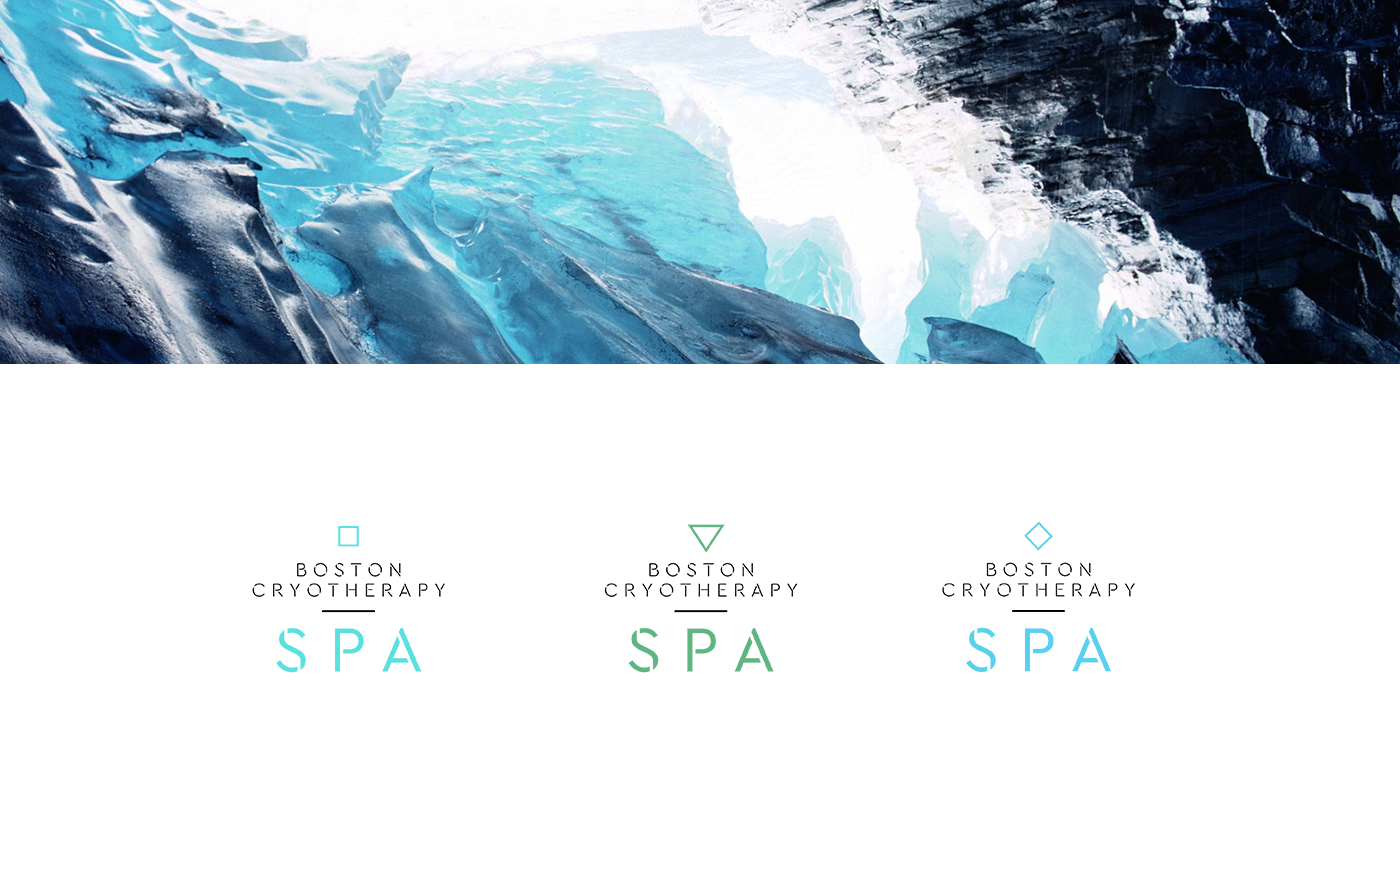 logo icons photo graphic design Spa boston ice cold